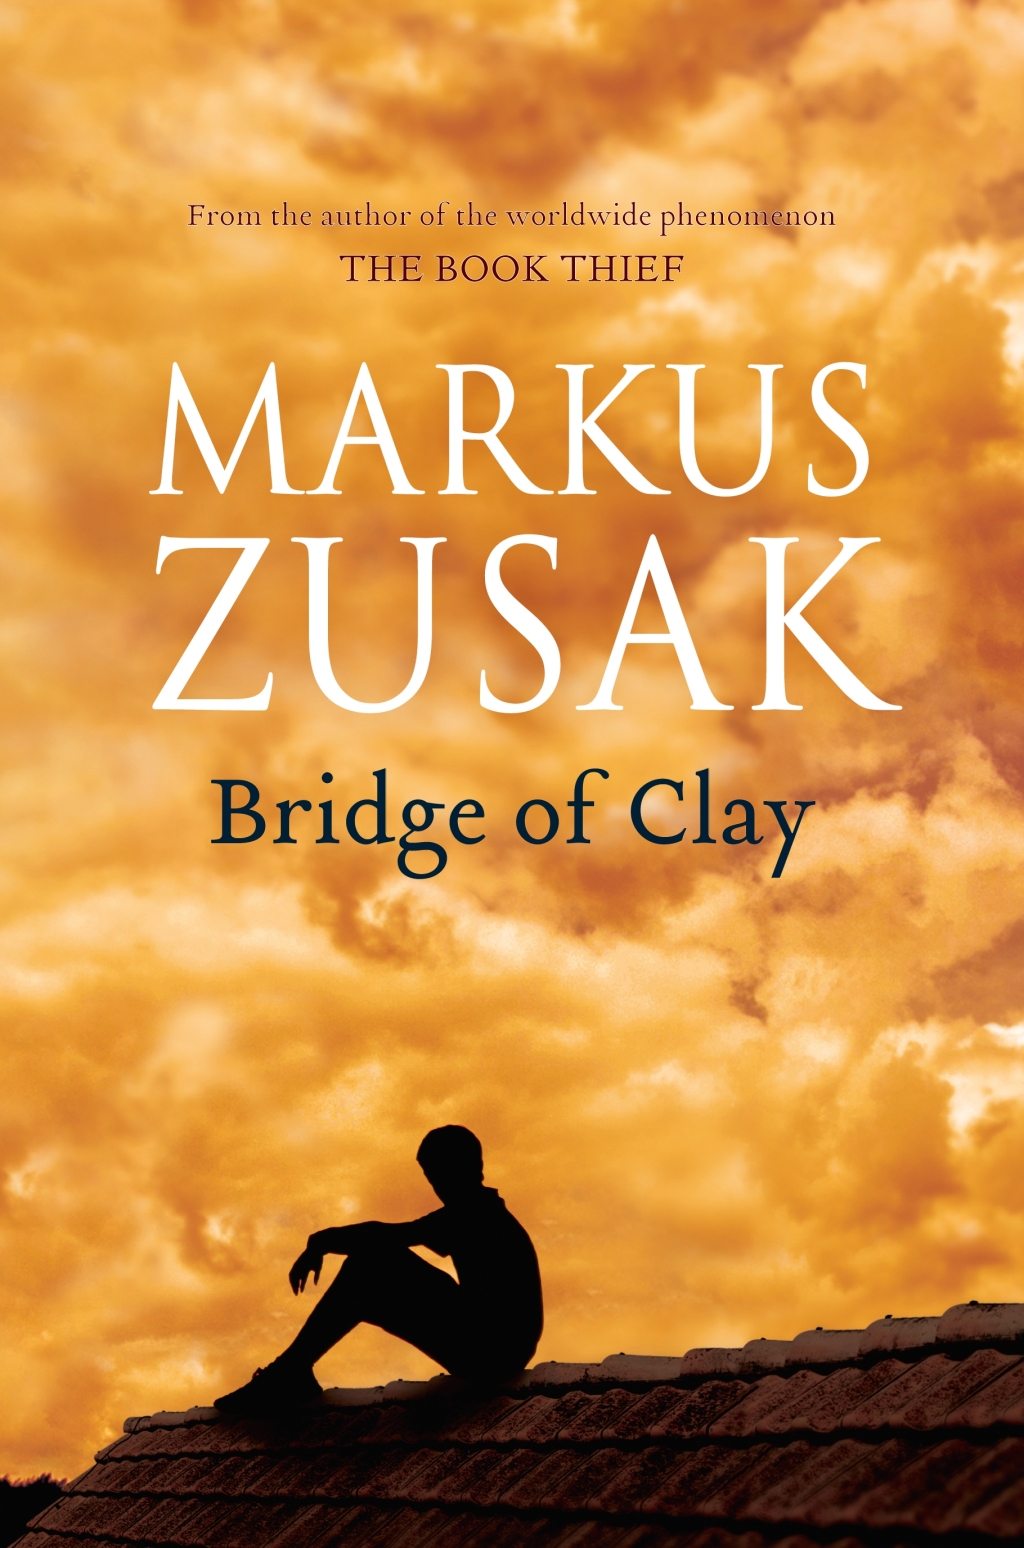 Bridge of Clay by Markus Zusak